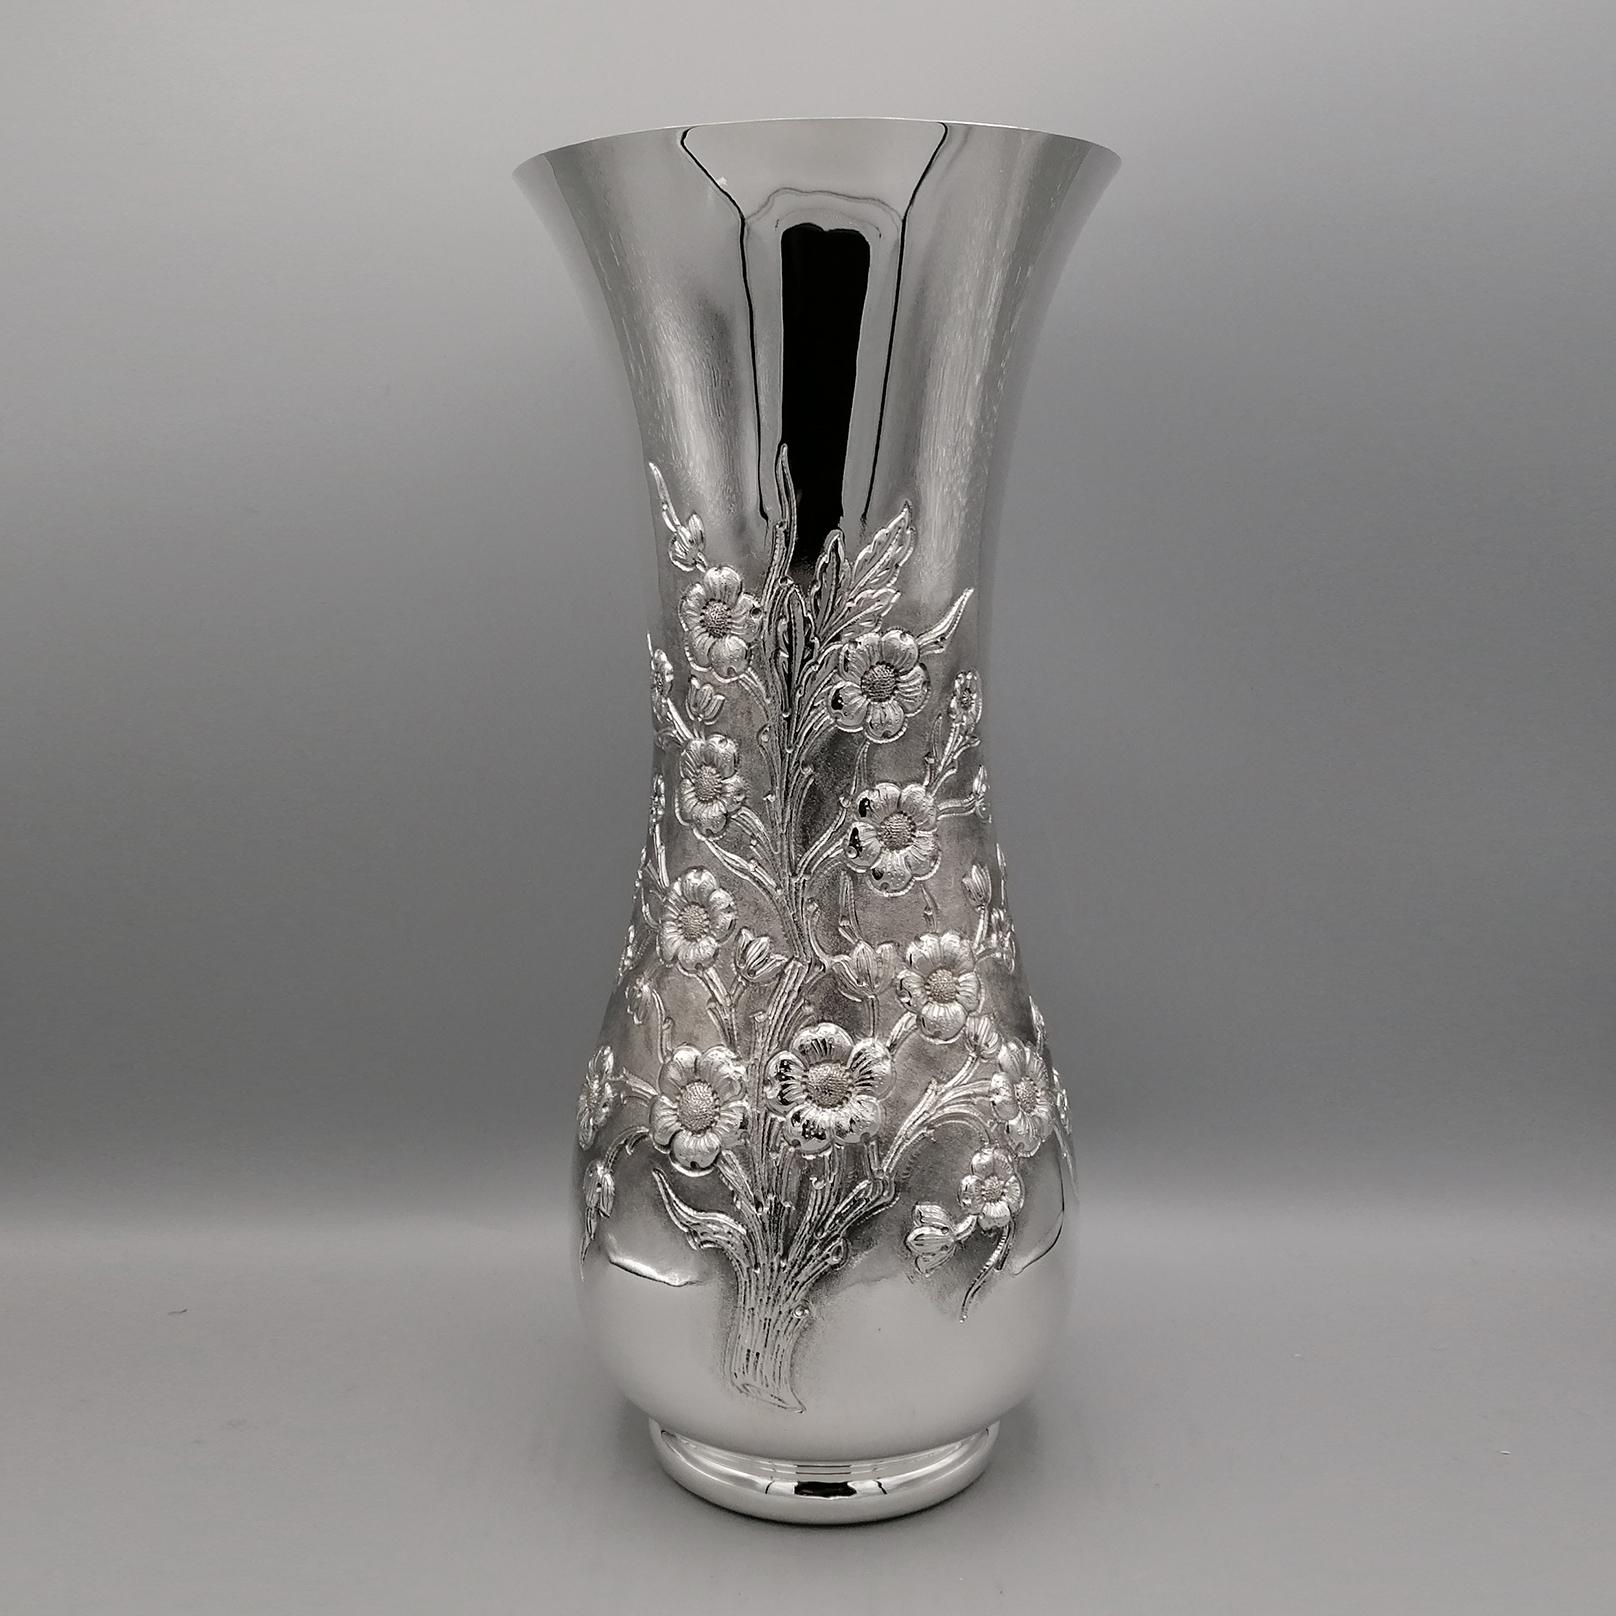 Vase en argent sterling de forme sinueuse et classique.
Le vase a été fabriqué à partir d'une plaque d'argent 925, puis estampé d'un motif représentant une branche fleurie.
La ciselure très fine a été terminée au burin et gravée. Un moletage a été